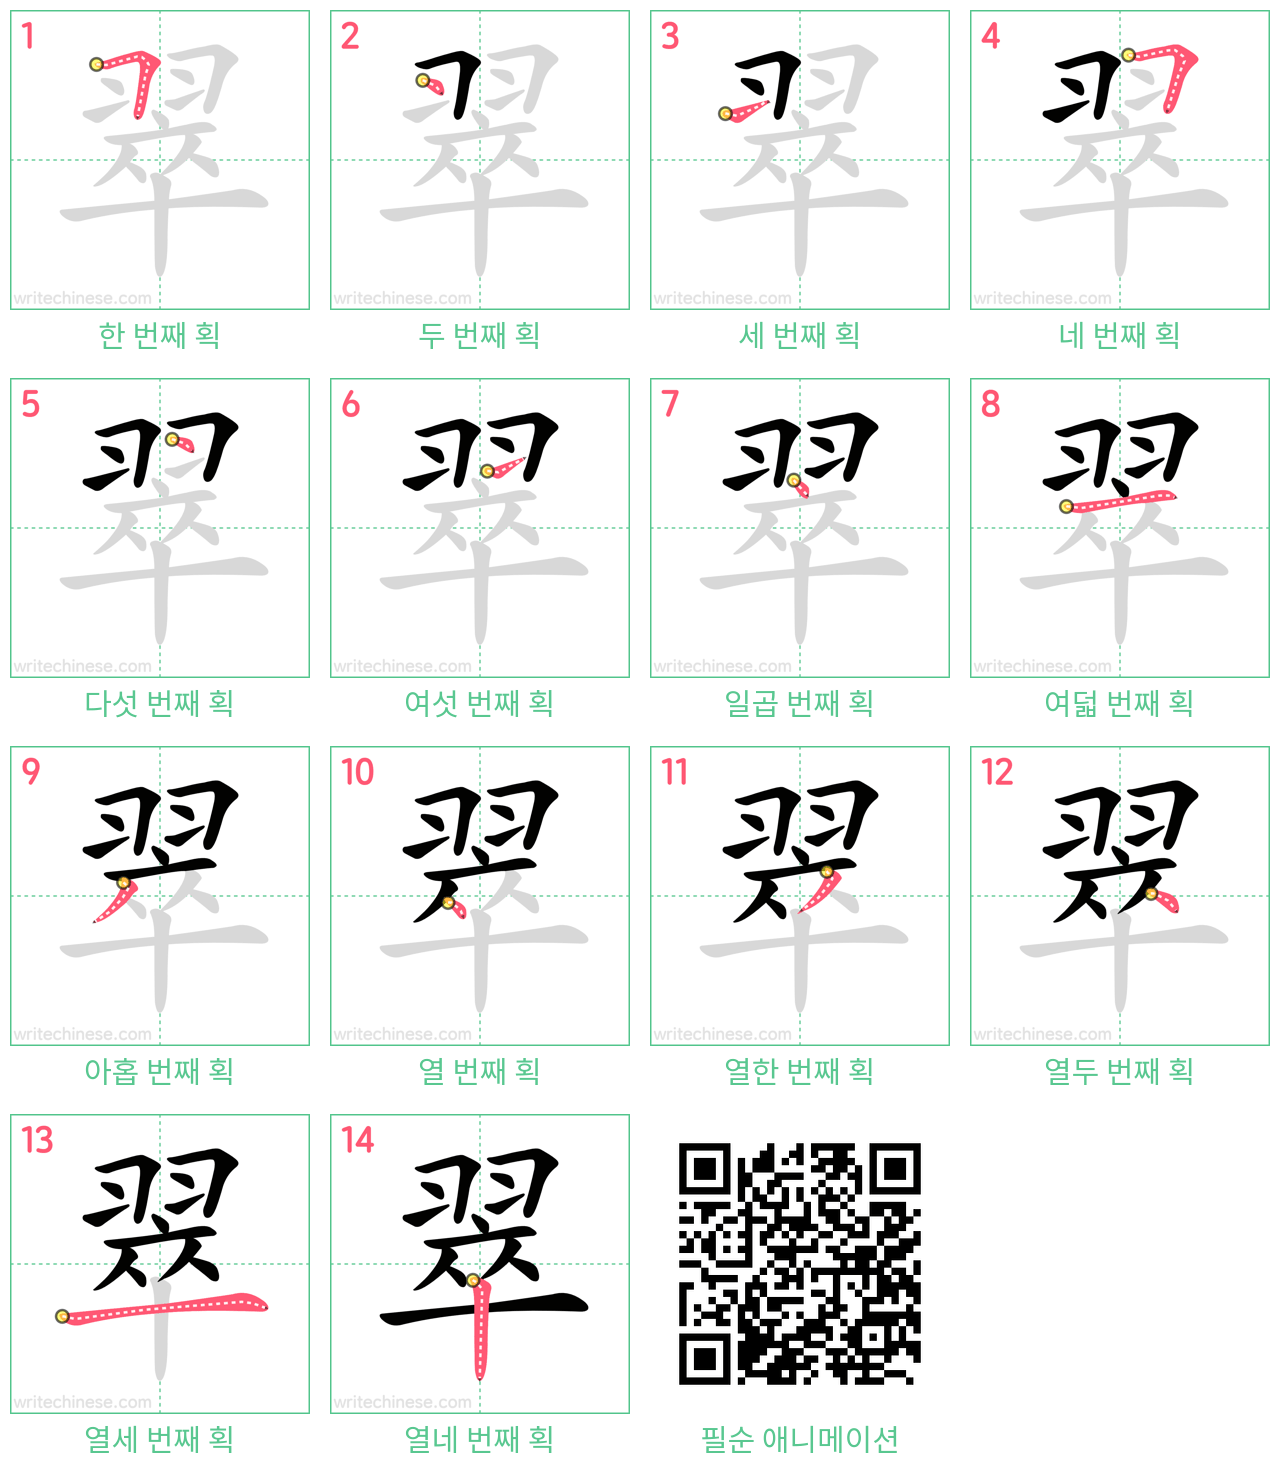 翠 step-by-step stroke order diagrams